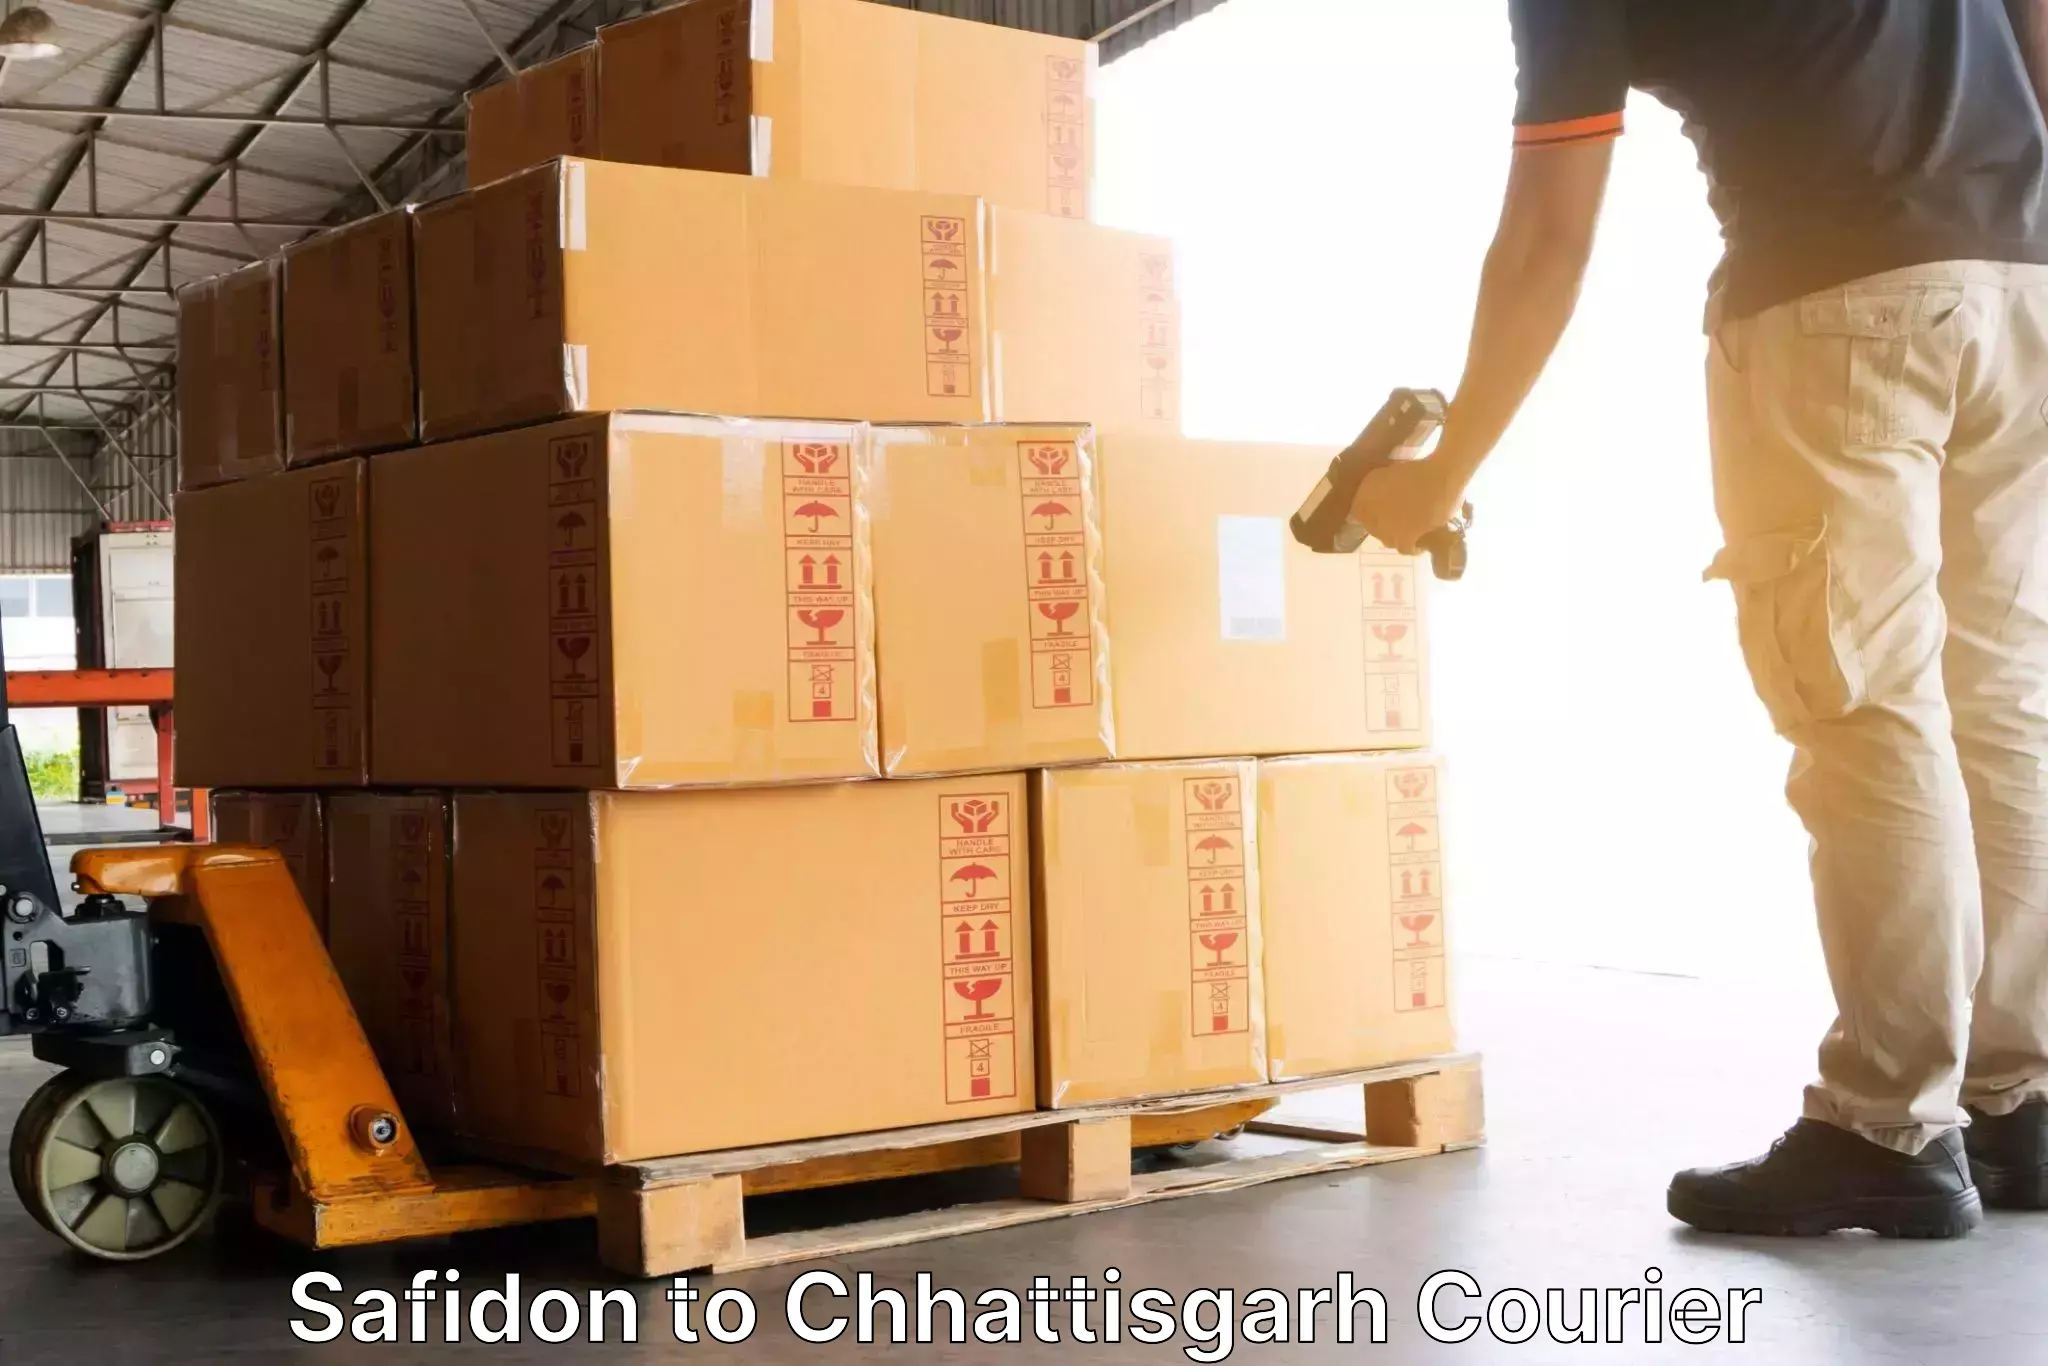 Efficient cargo handling in Safidon to Berla